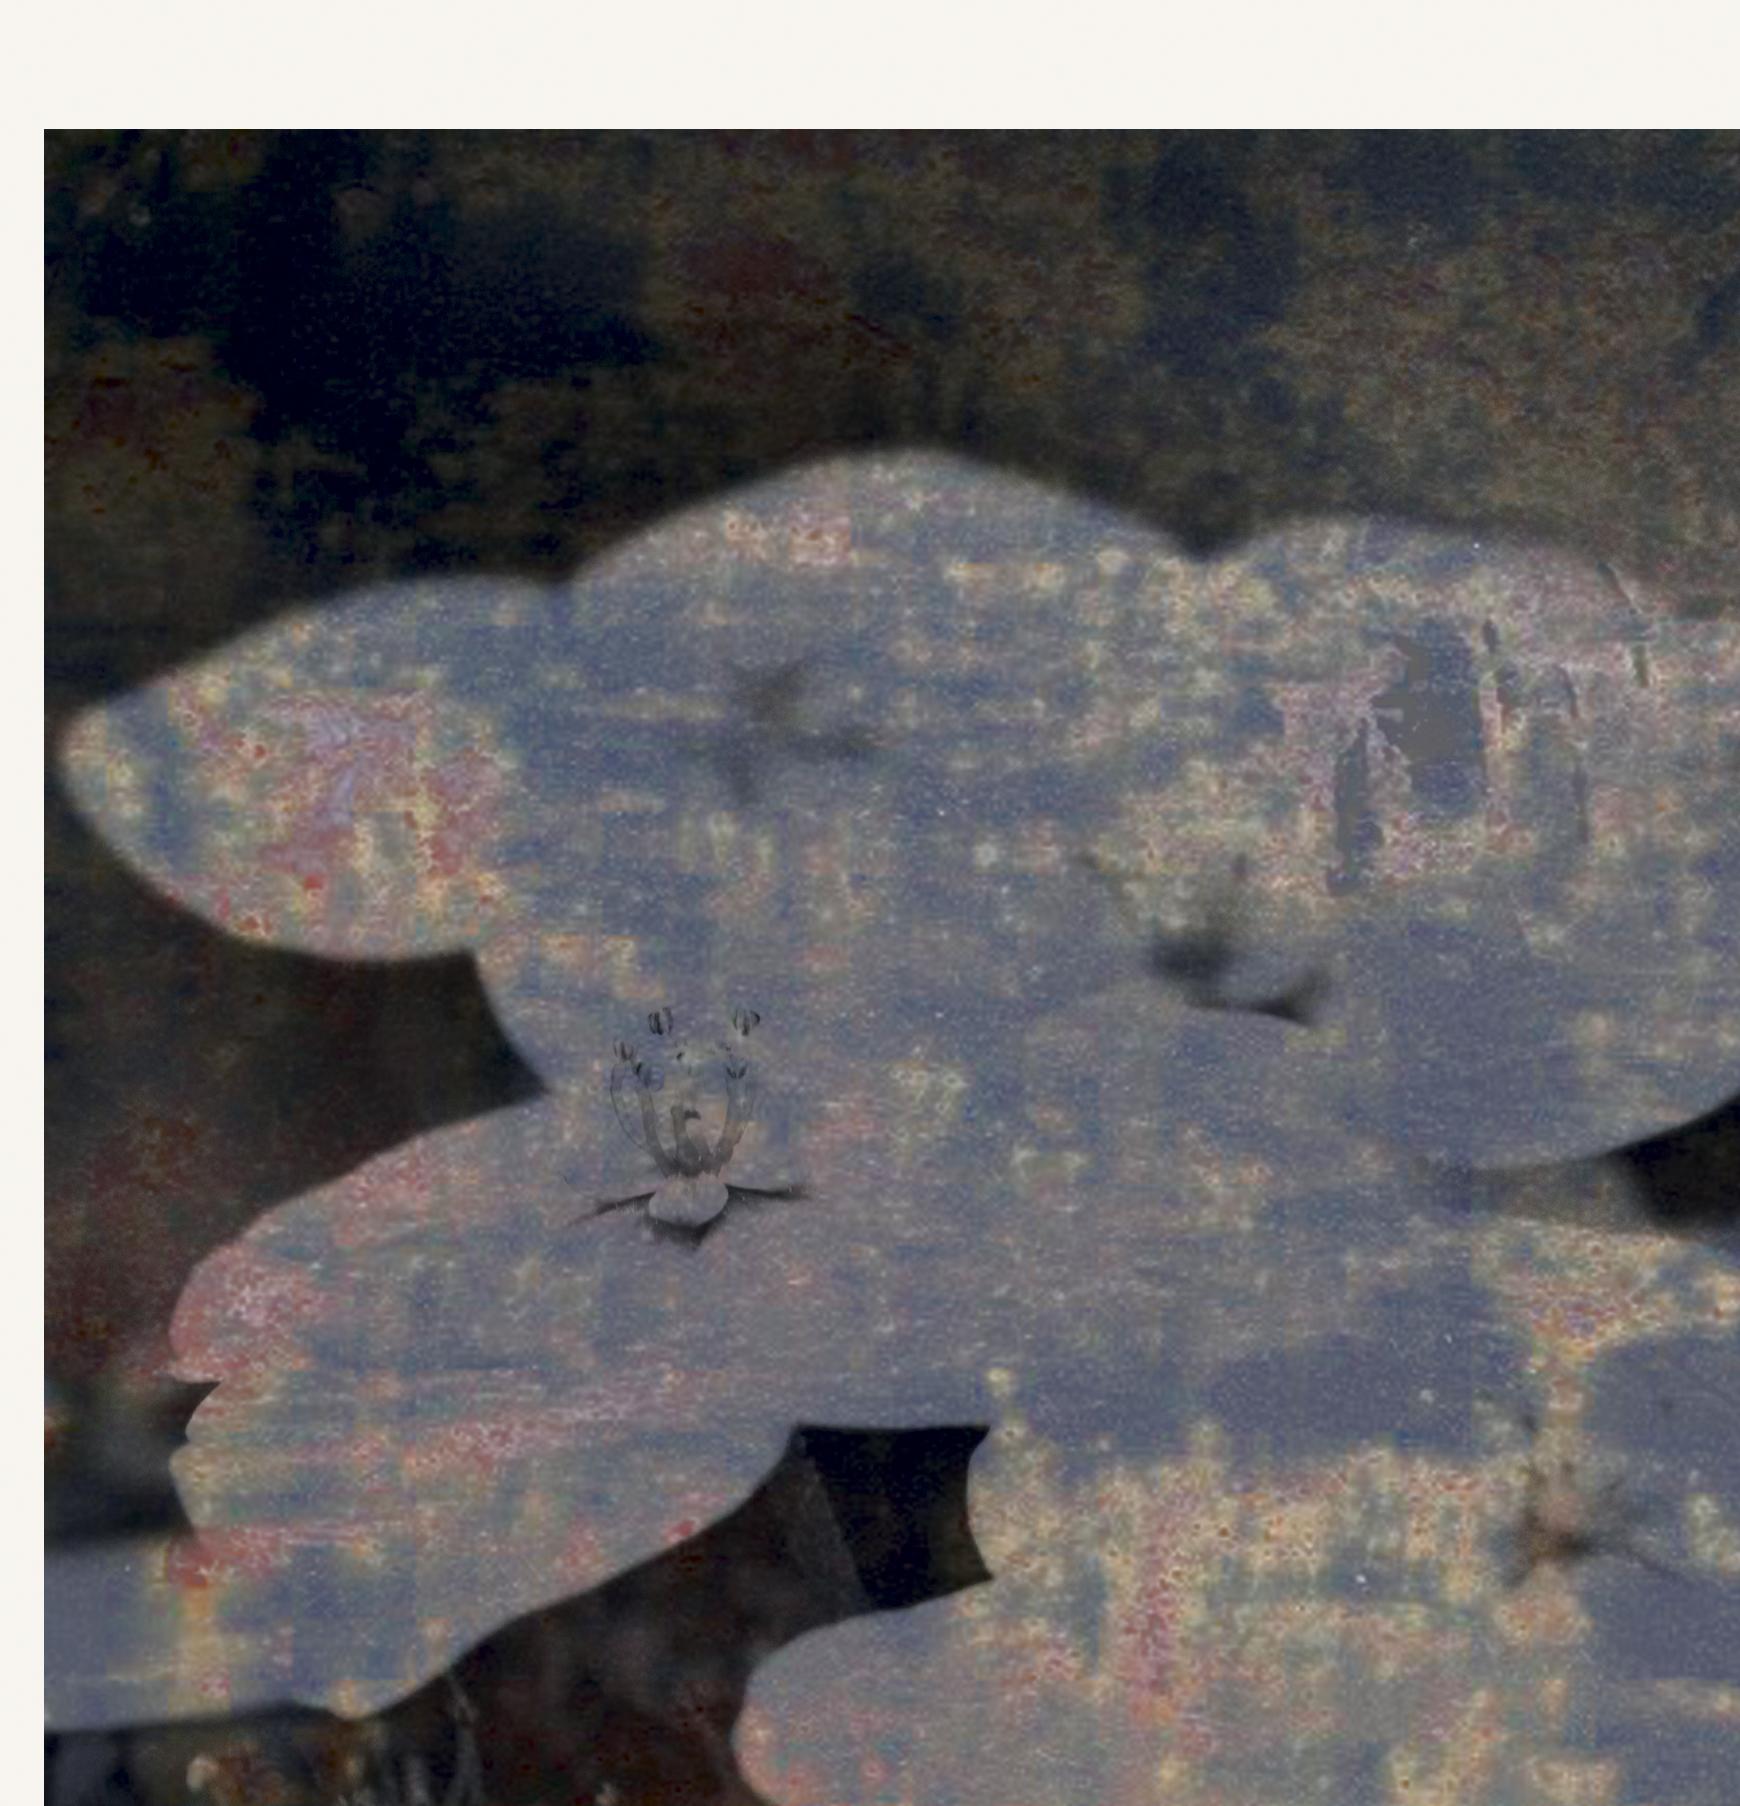 Blumen 06, 2019
auflage von 25

Digitaler Pigmentdruck mit Ultrachrome-Tinte auf Fabriano Rosaspina-Papier. Handsigniert vom Künstler, mit Echtheitszertifikat.  (Ungerahmt)

Seine Werke wurden im Reina Sofía Museum in Madrid, in der Royal Academy of